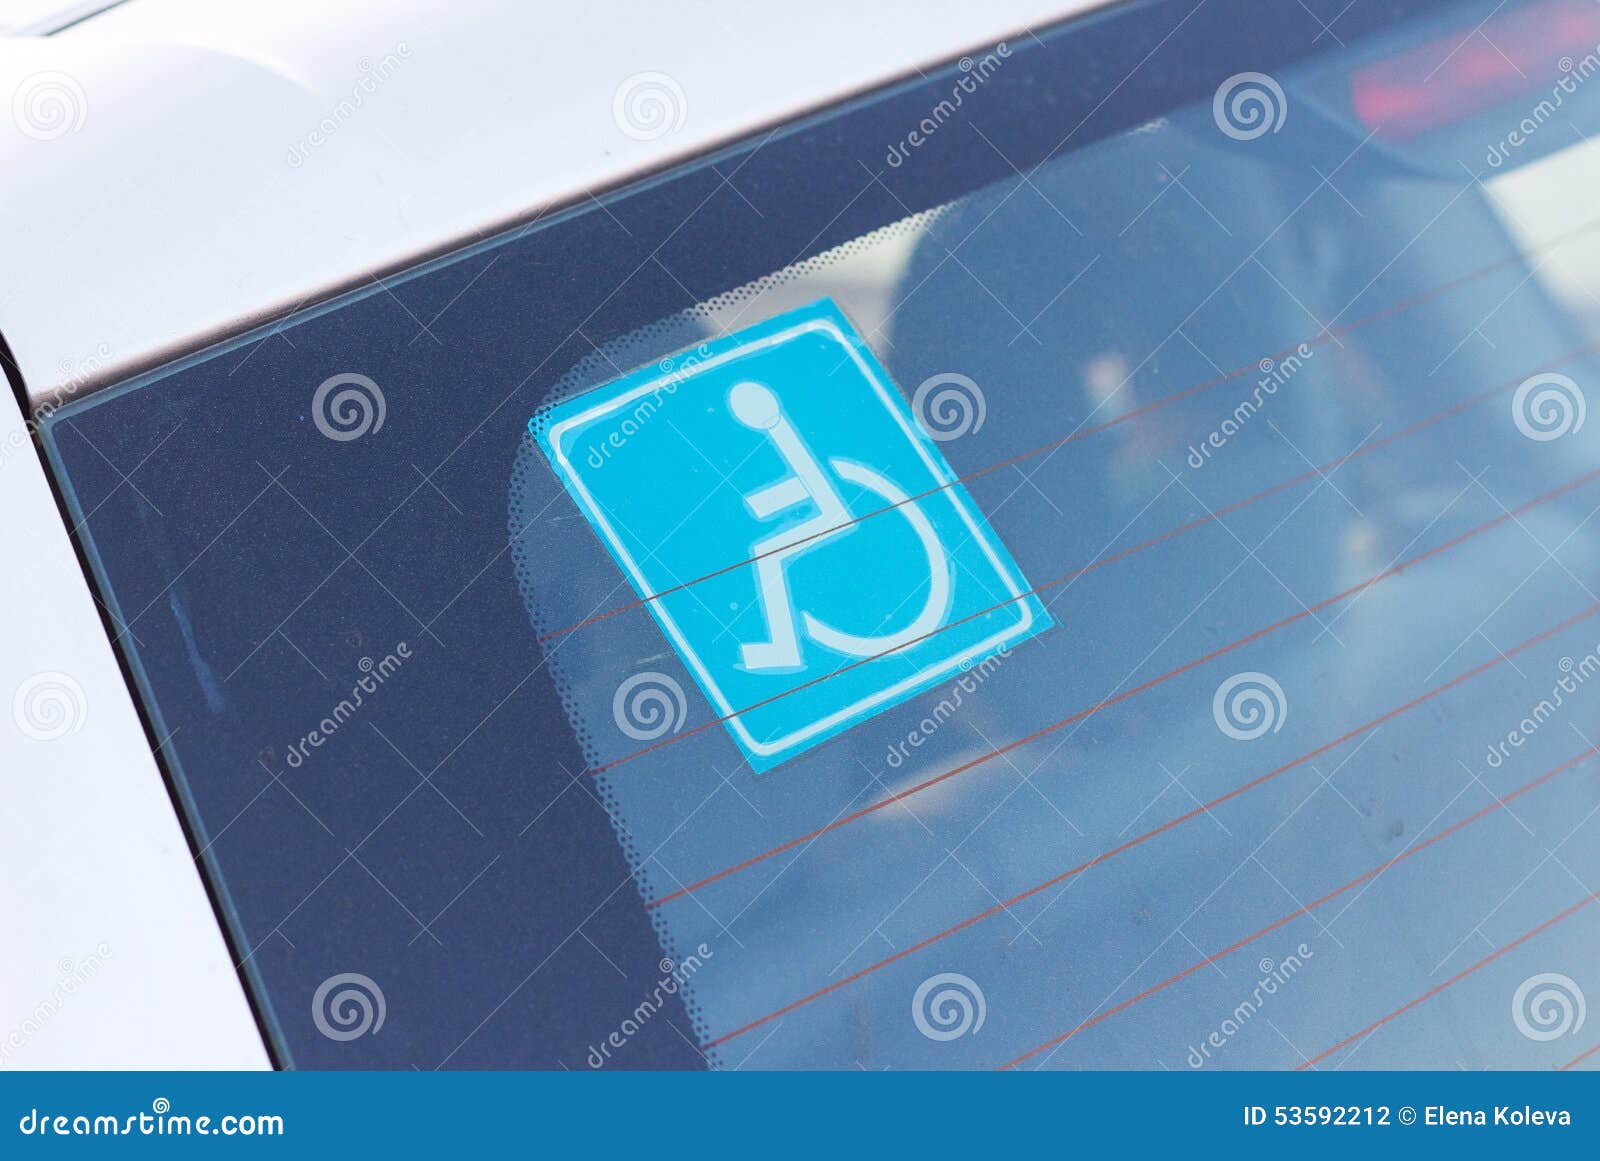 Autocollant Handicapé De Stationnement Sur La Voiture Photo stock - Image  du handicap, handicapé: 53592212